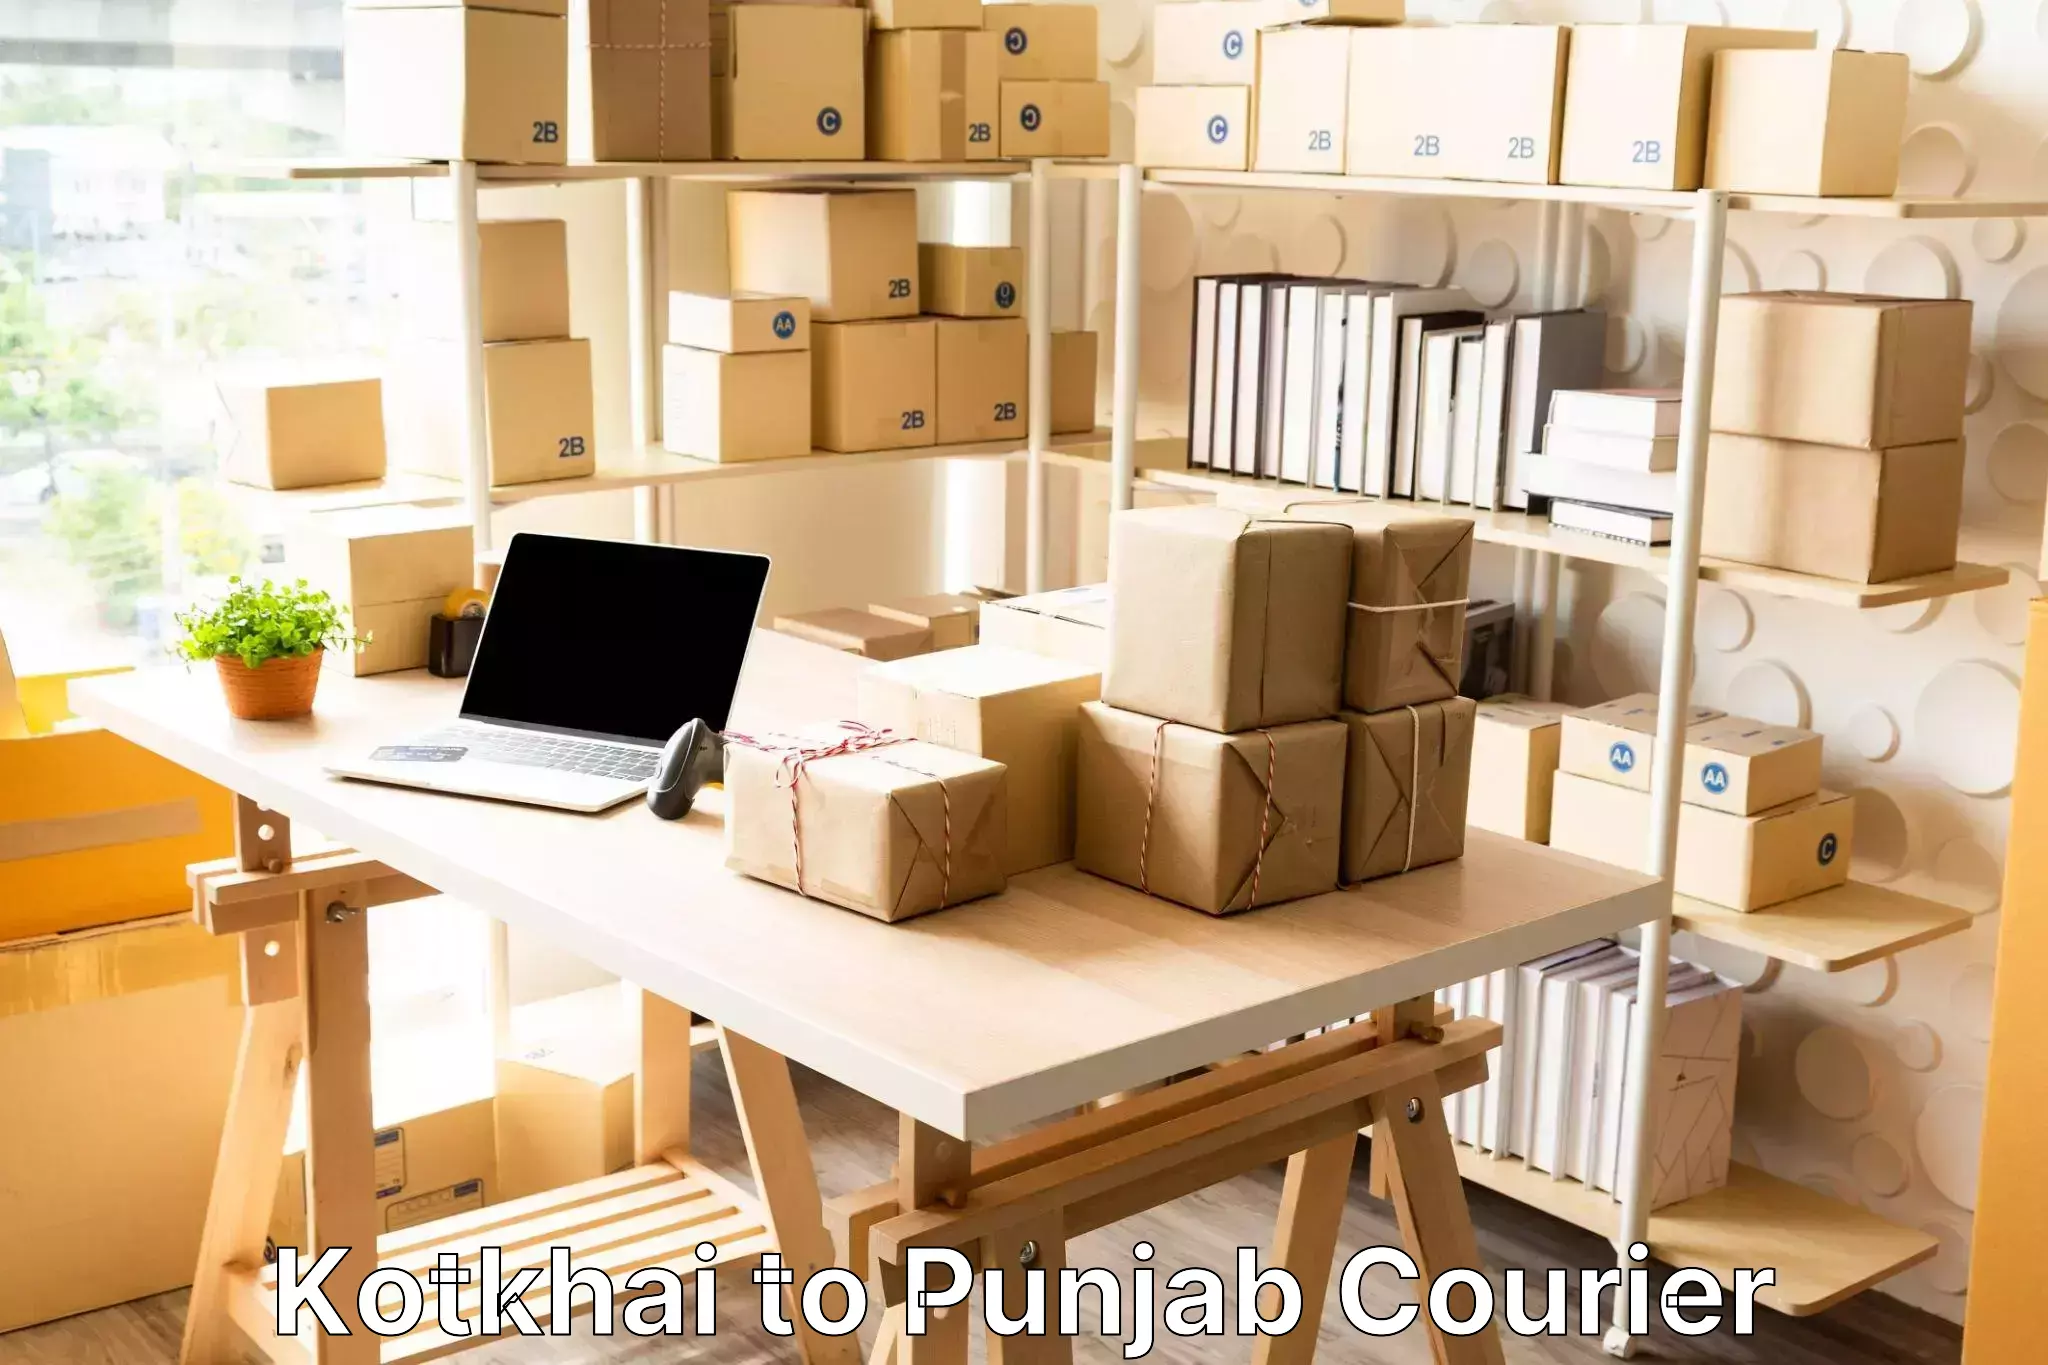 Luggage transport operations Kotkhai to Central University of Punjab Bathinda